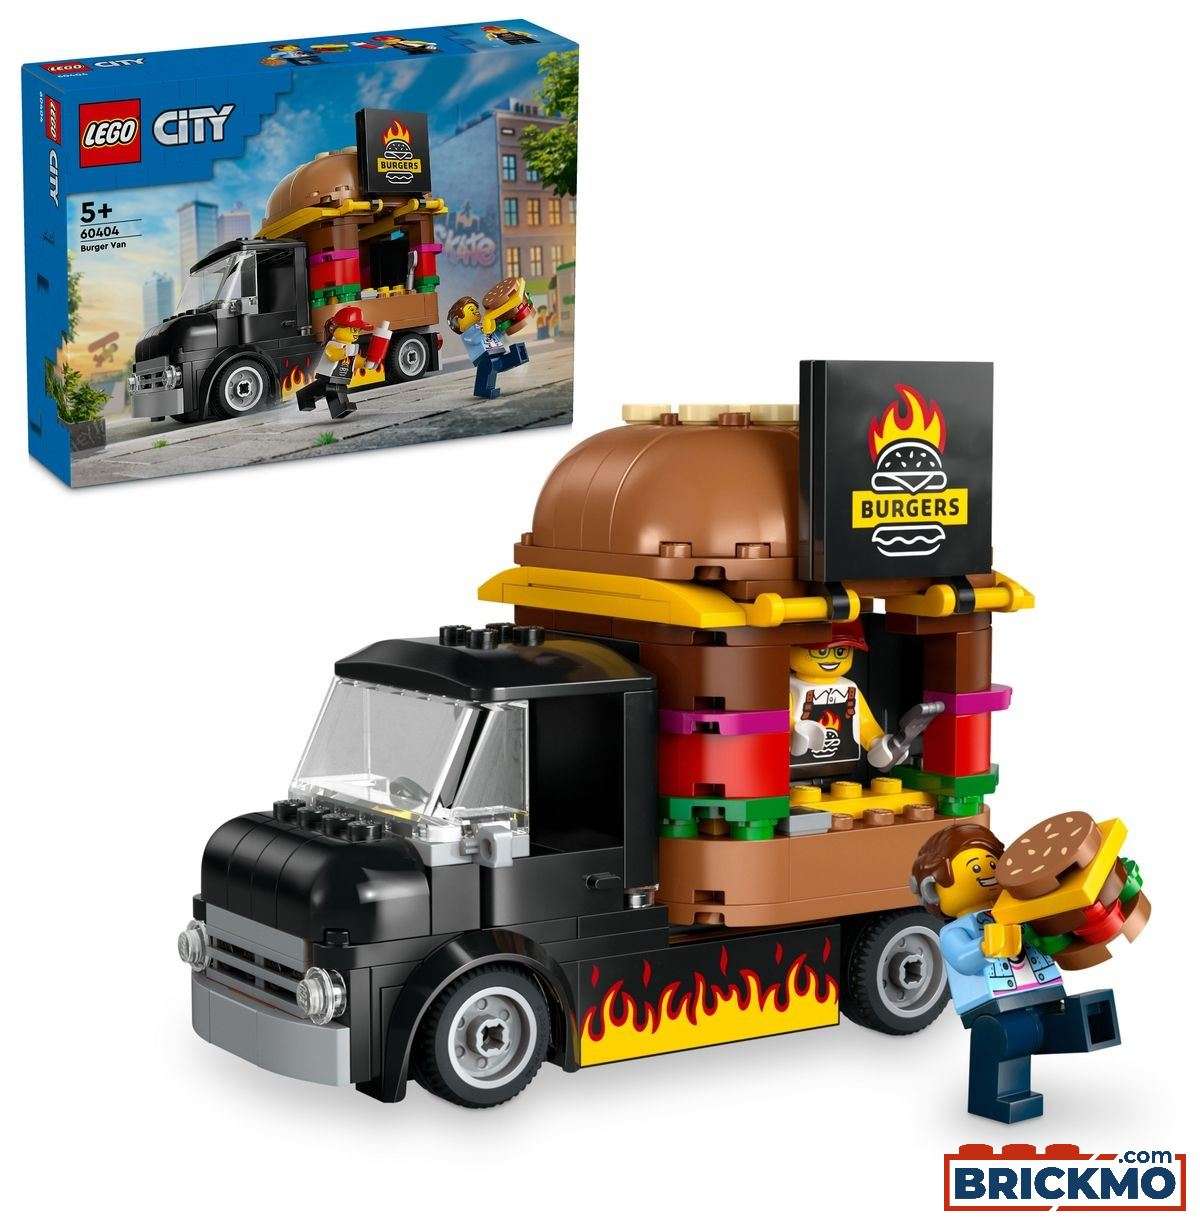 LEGO City 60404 Camión Hamburguesería 60404